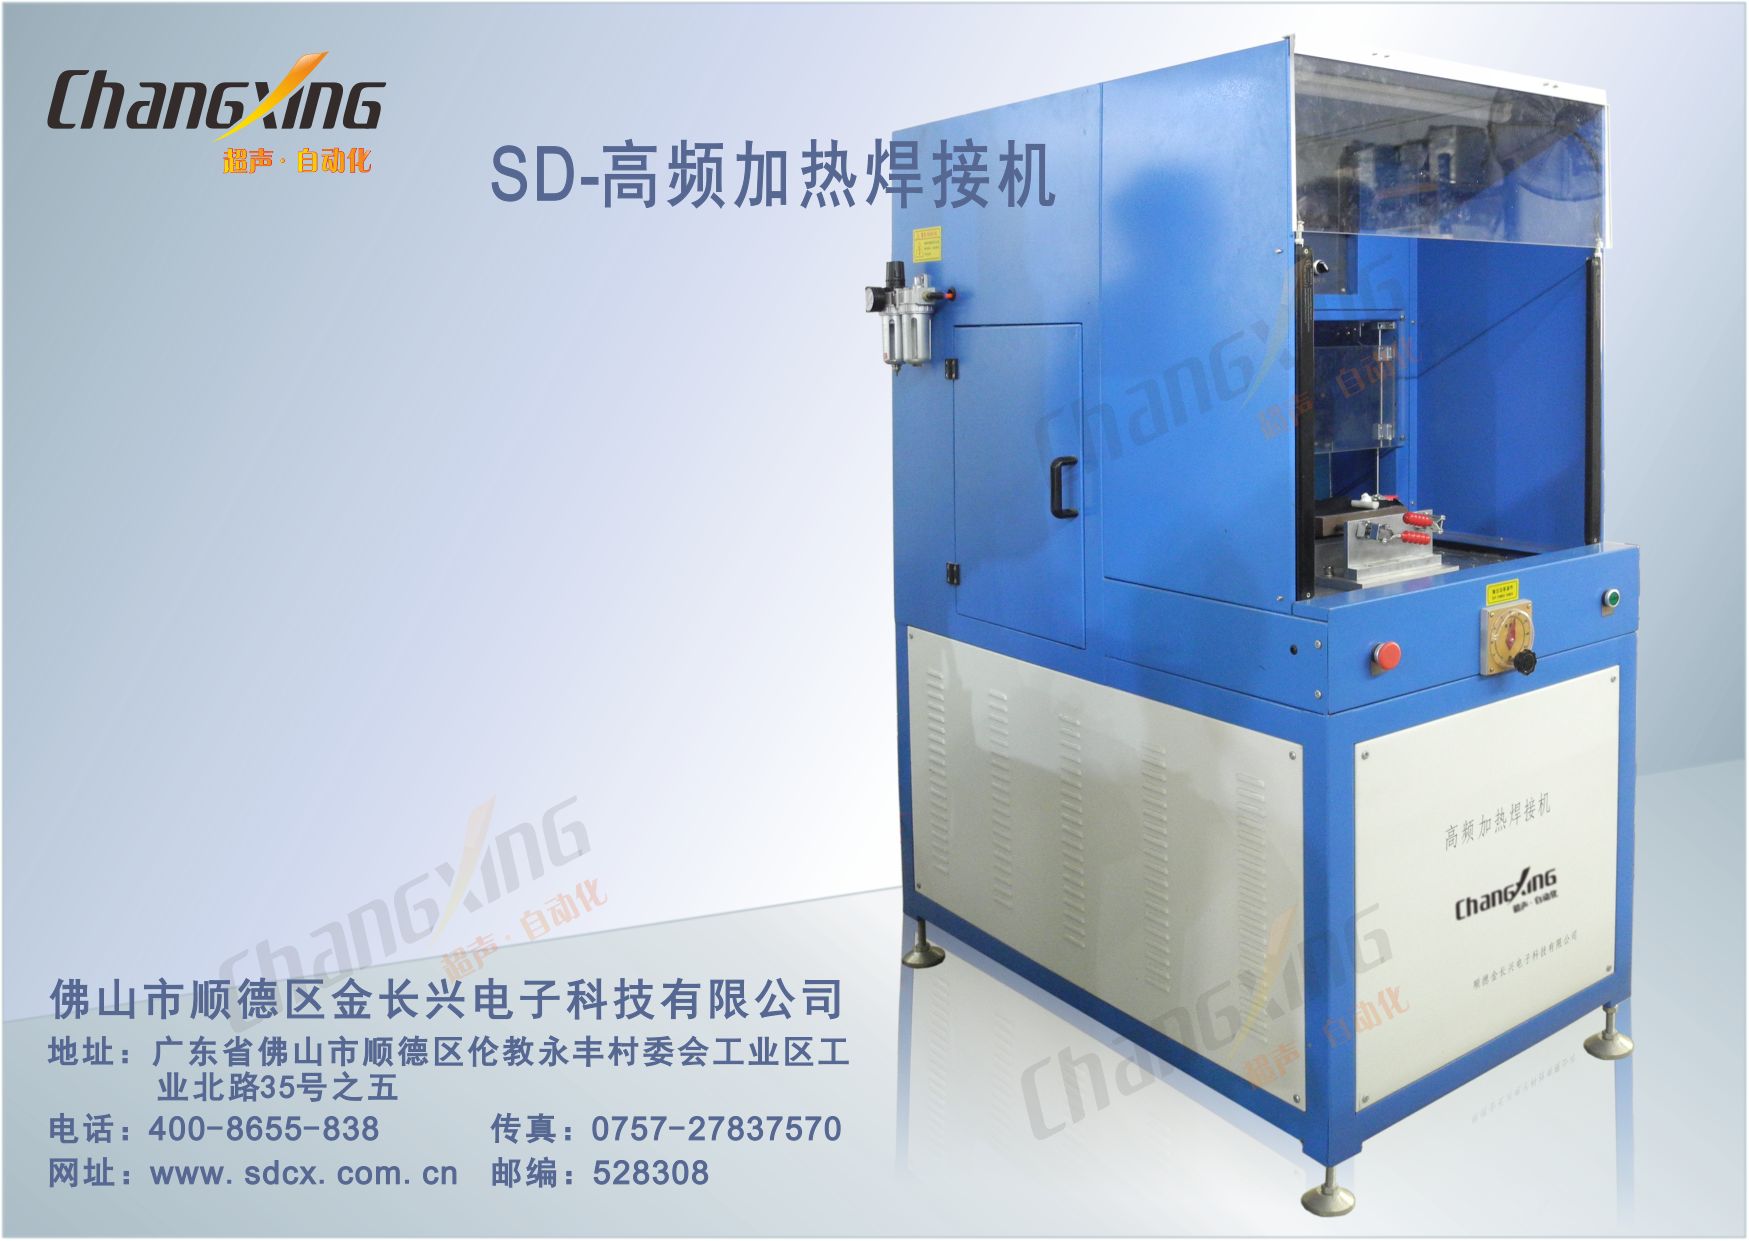 SD-高频加热焊接机(长春华涛)